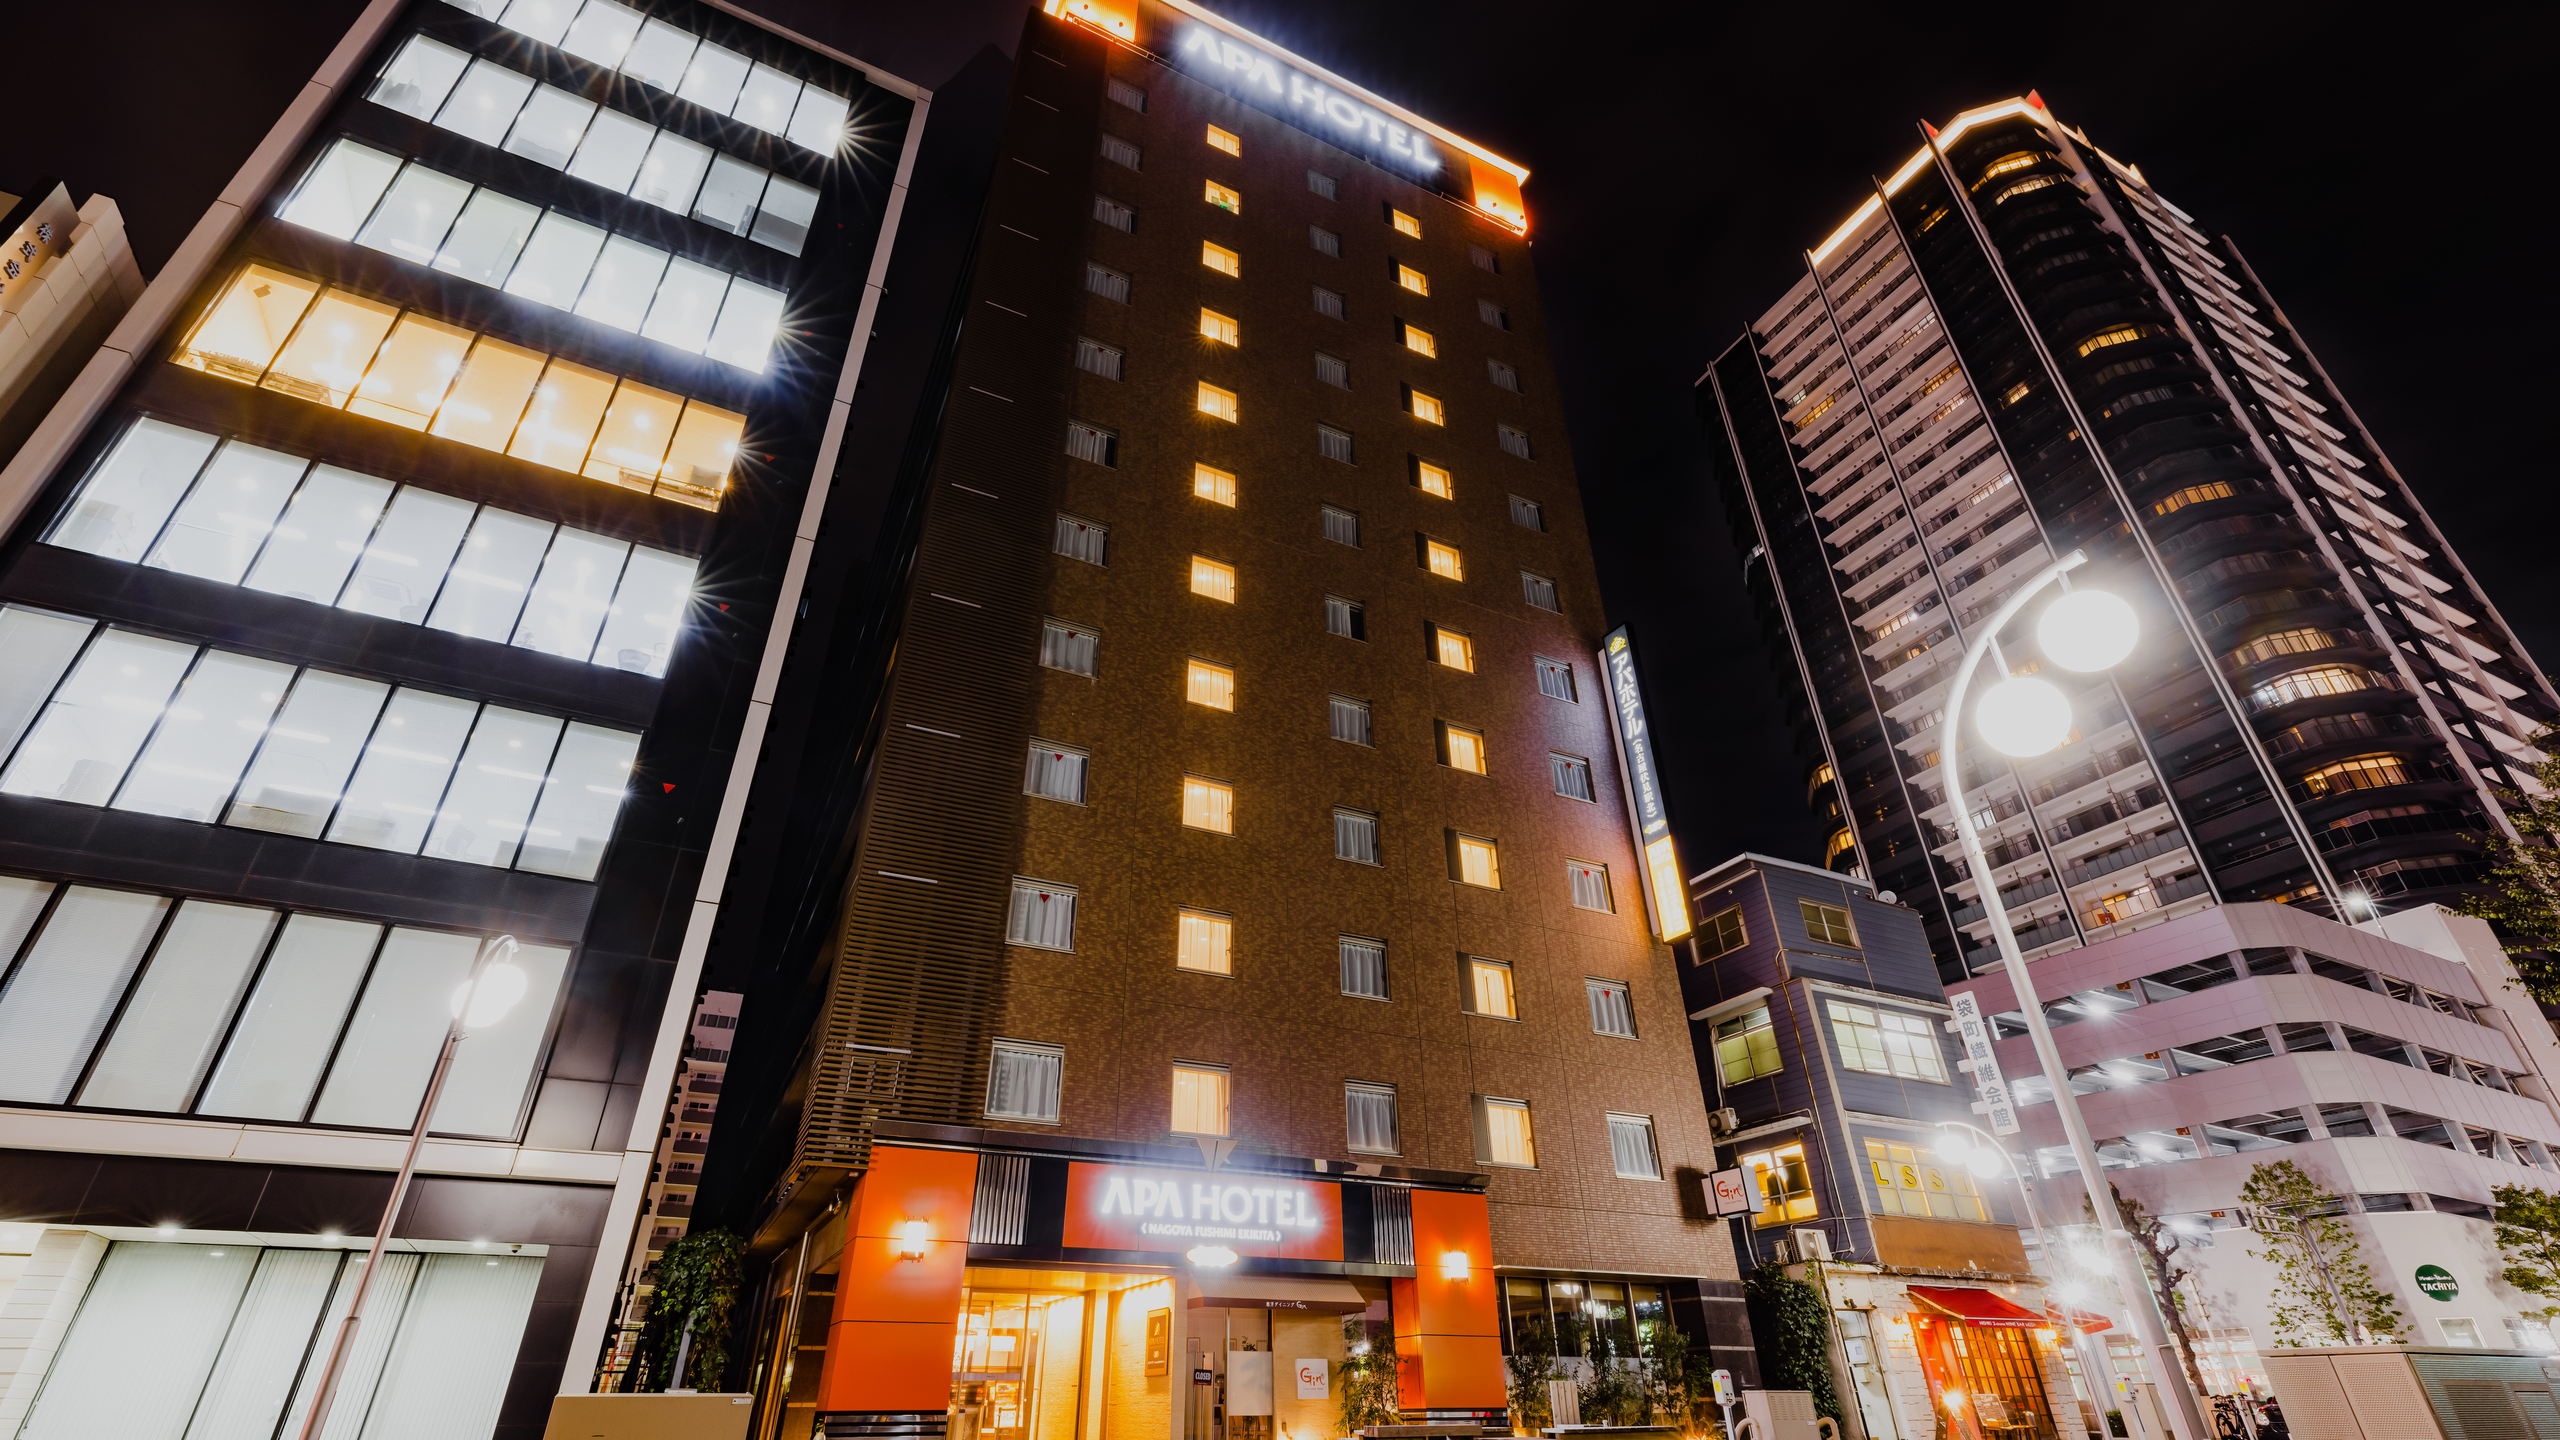 アパホテル〈名古屋伏見駅北〉 image